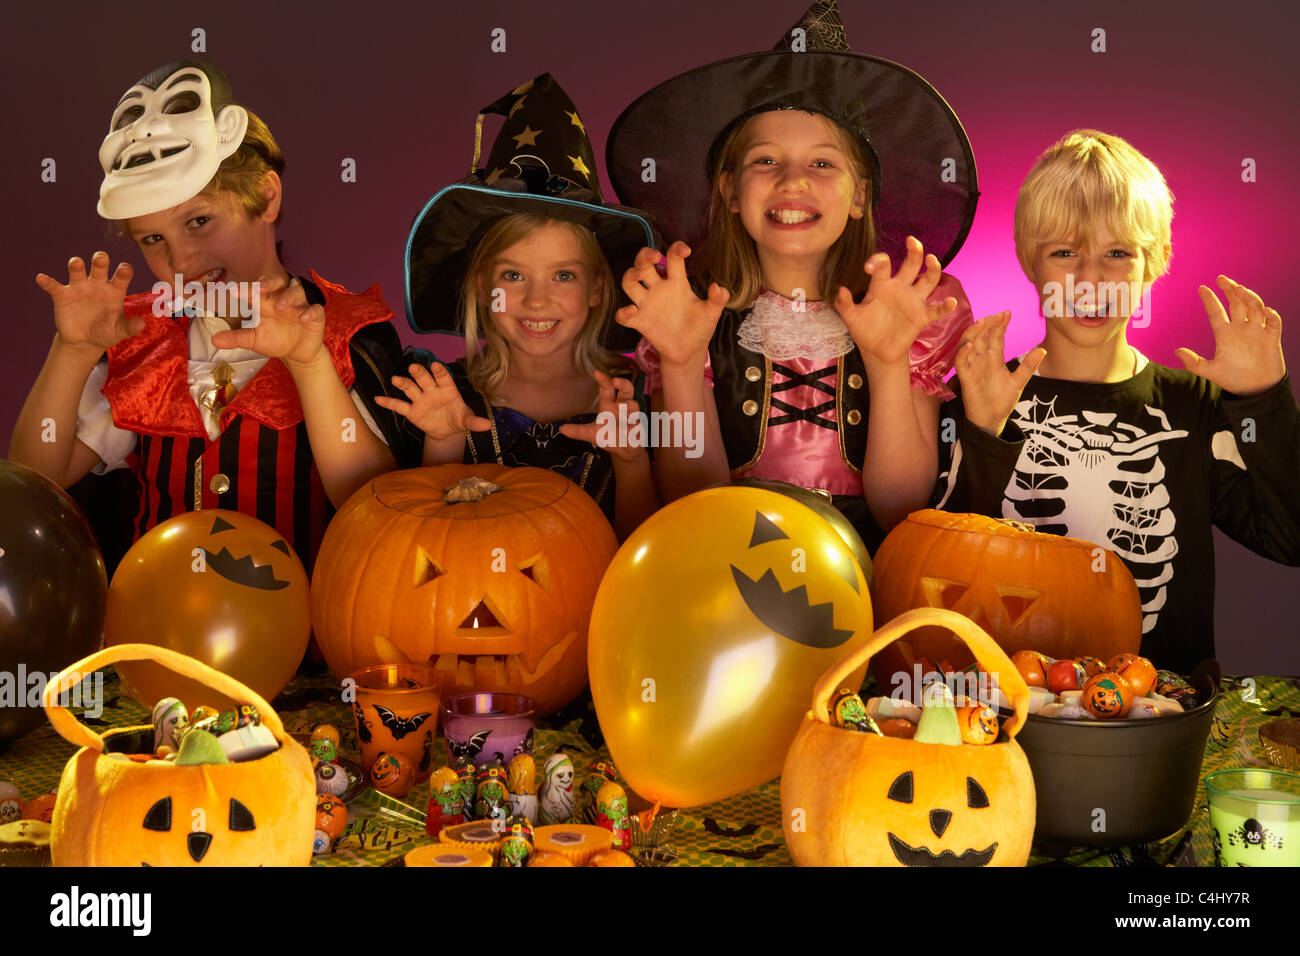 Fiesta de Halloween con niños que vestían trajes de fantasía Foto de stock